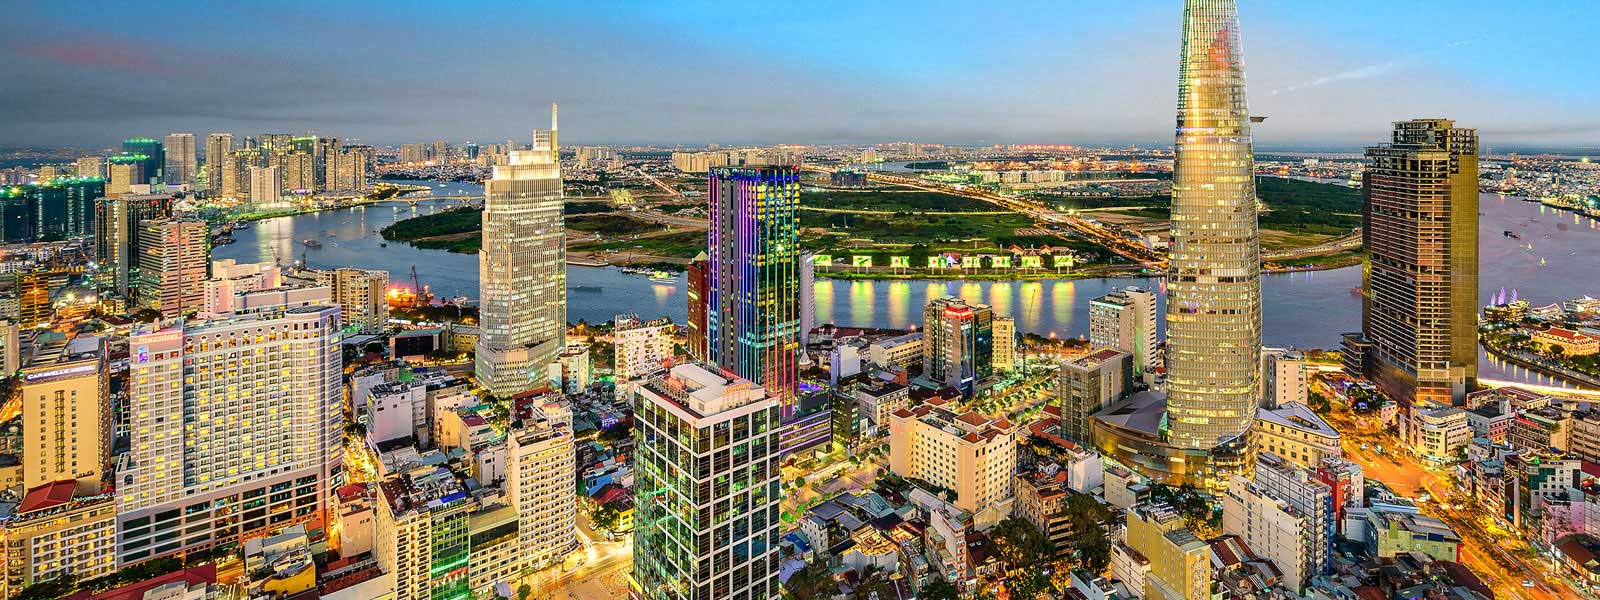 a modern city skyline in Vietnam